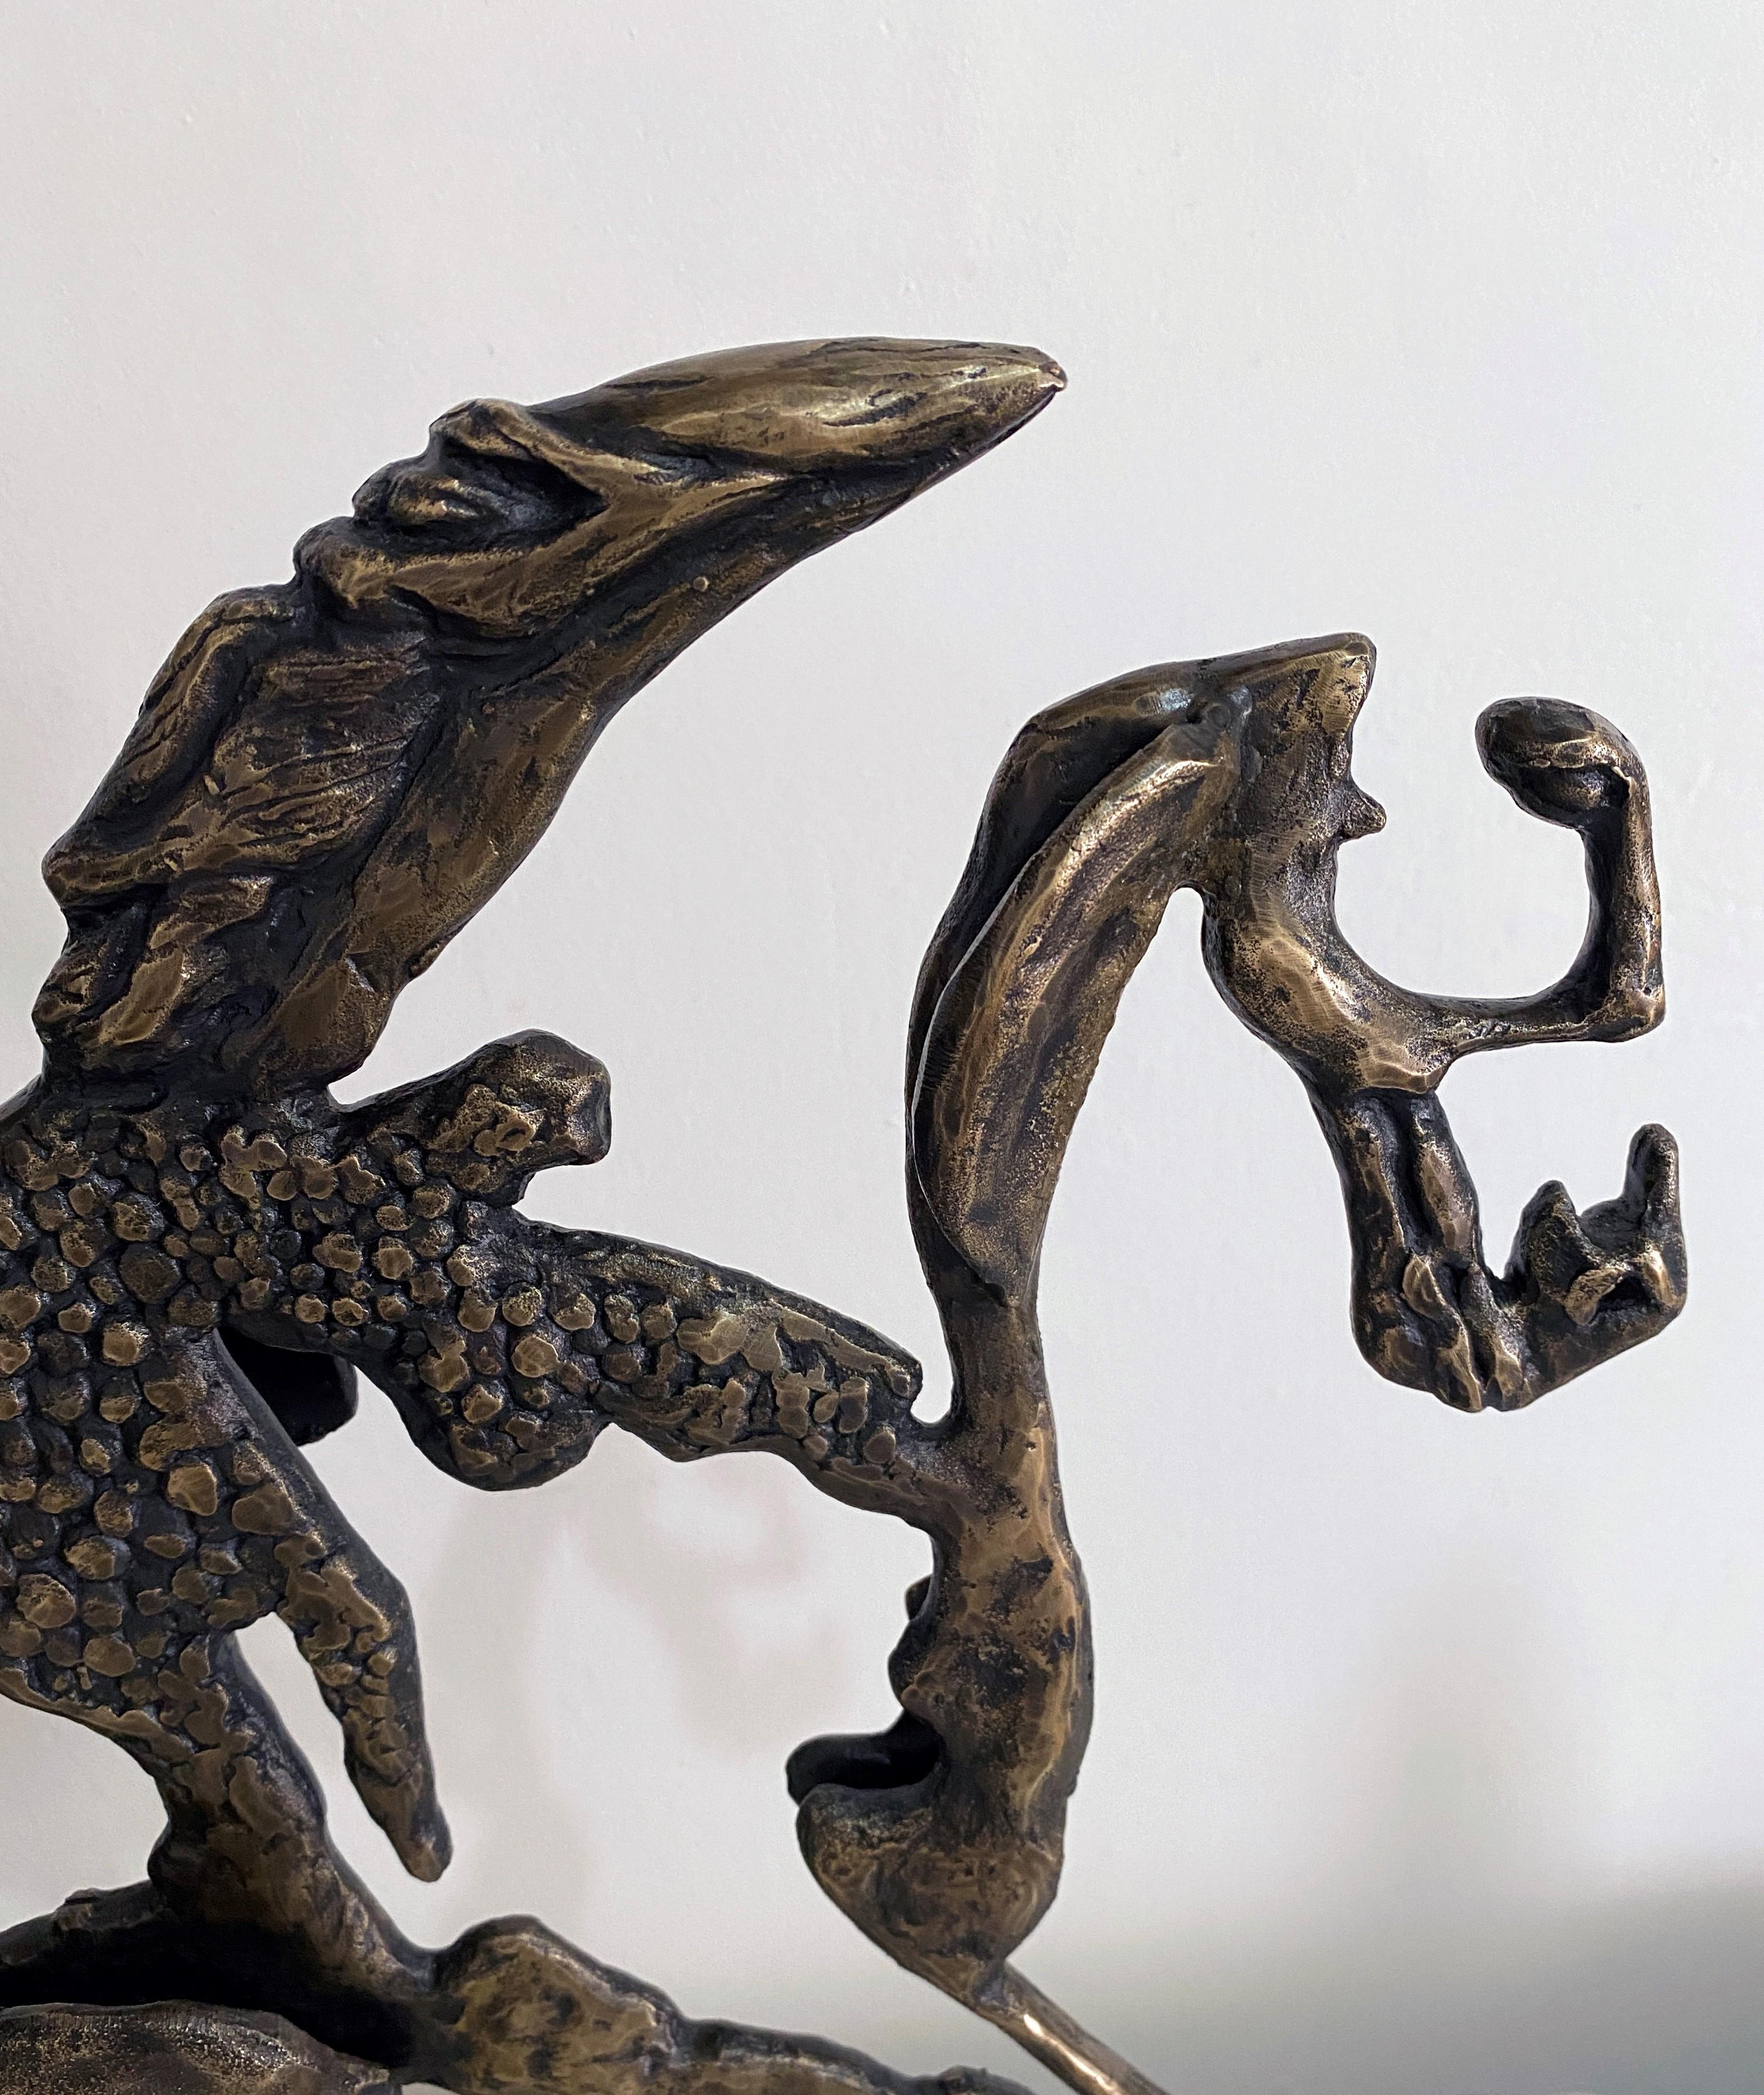 Zeitgenössische Tosca-Skulptur aus Bronze auf Sandsteinsockel – Sculpture von Helena Lillywhite